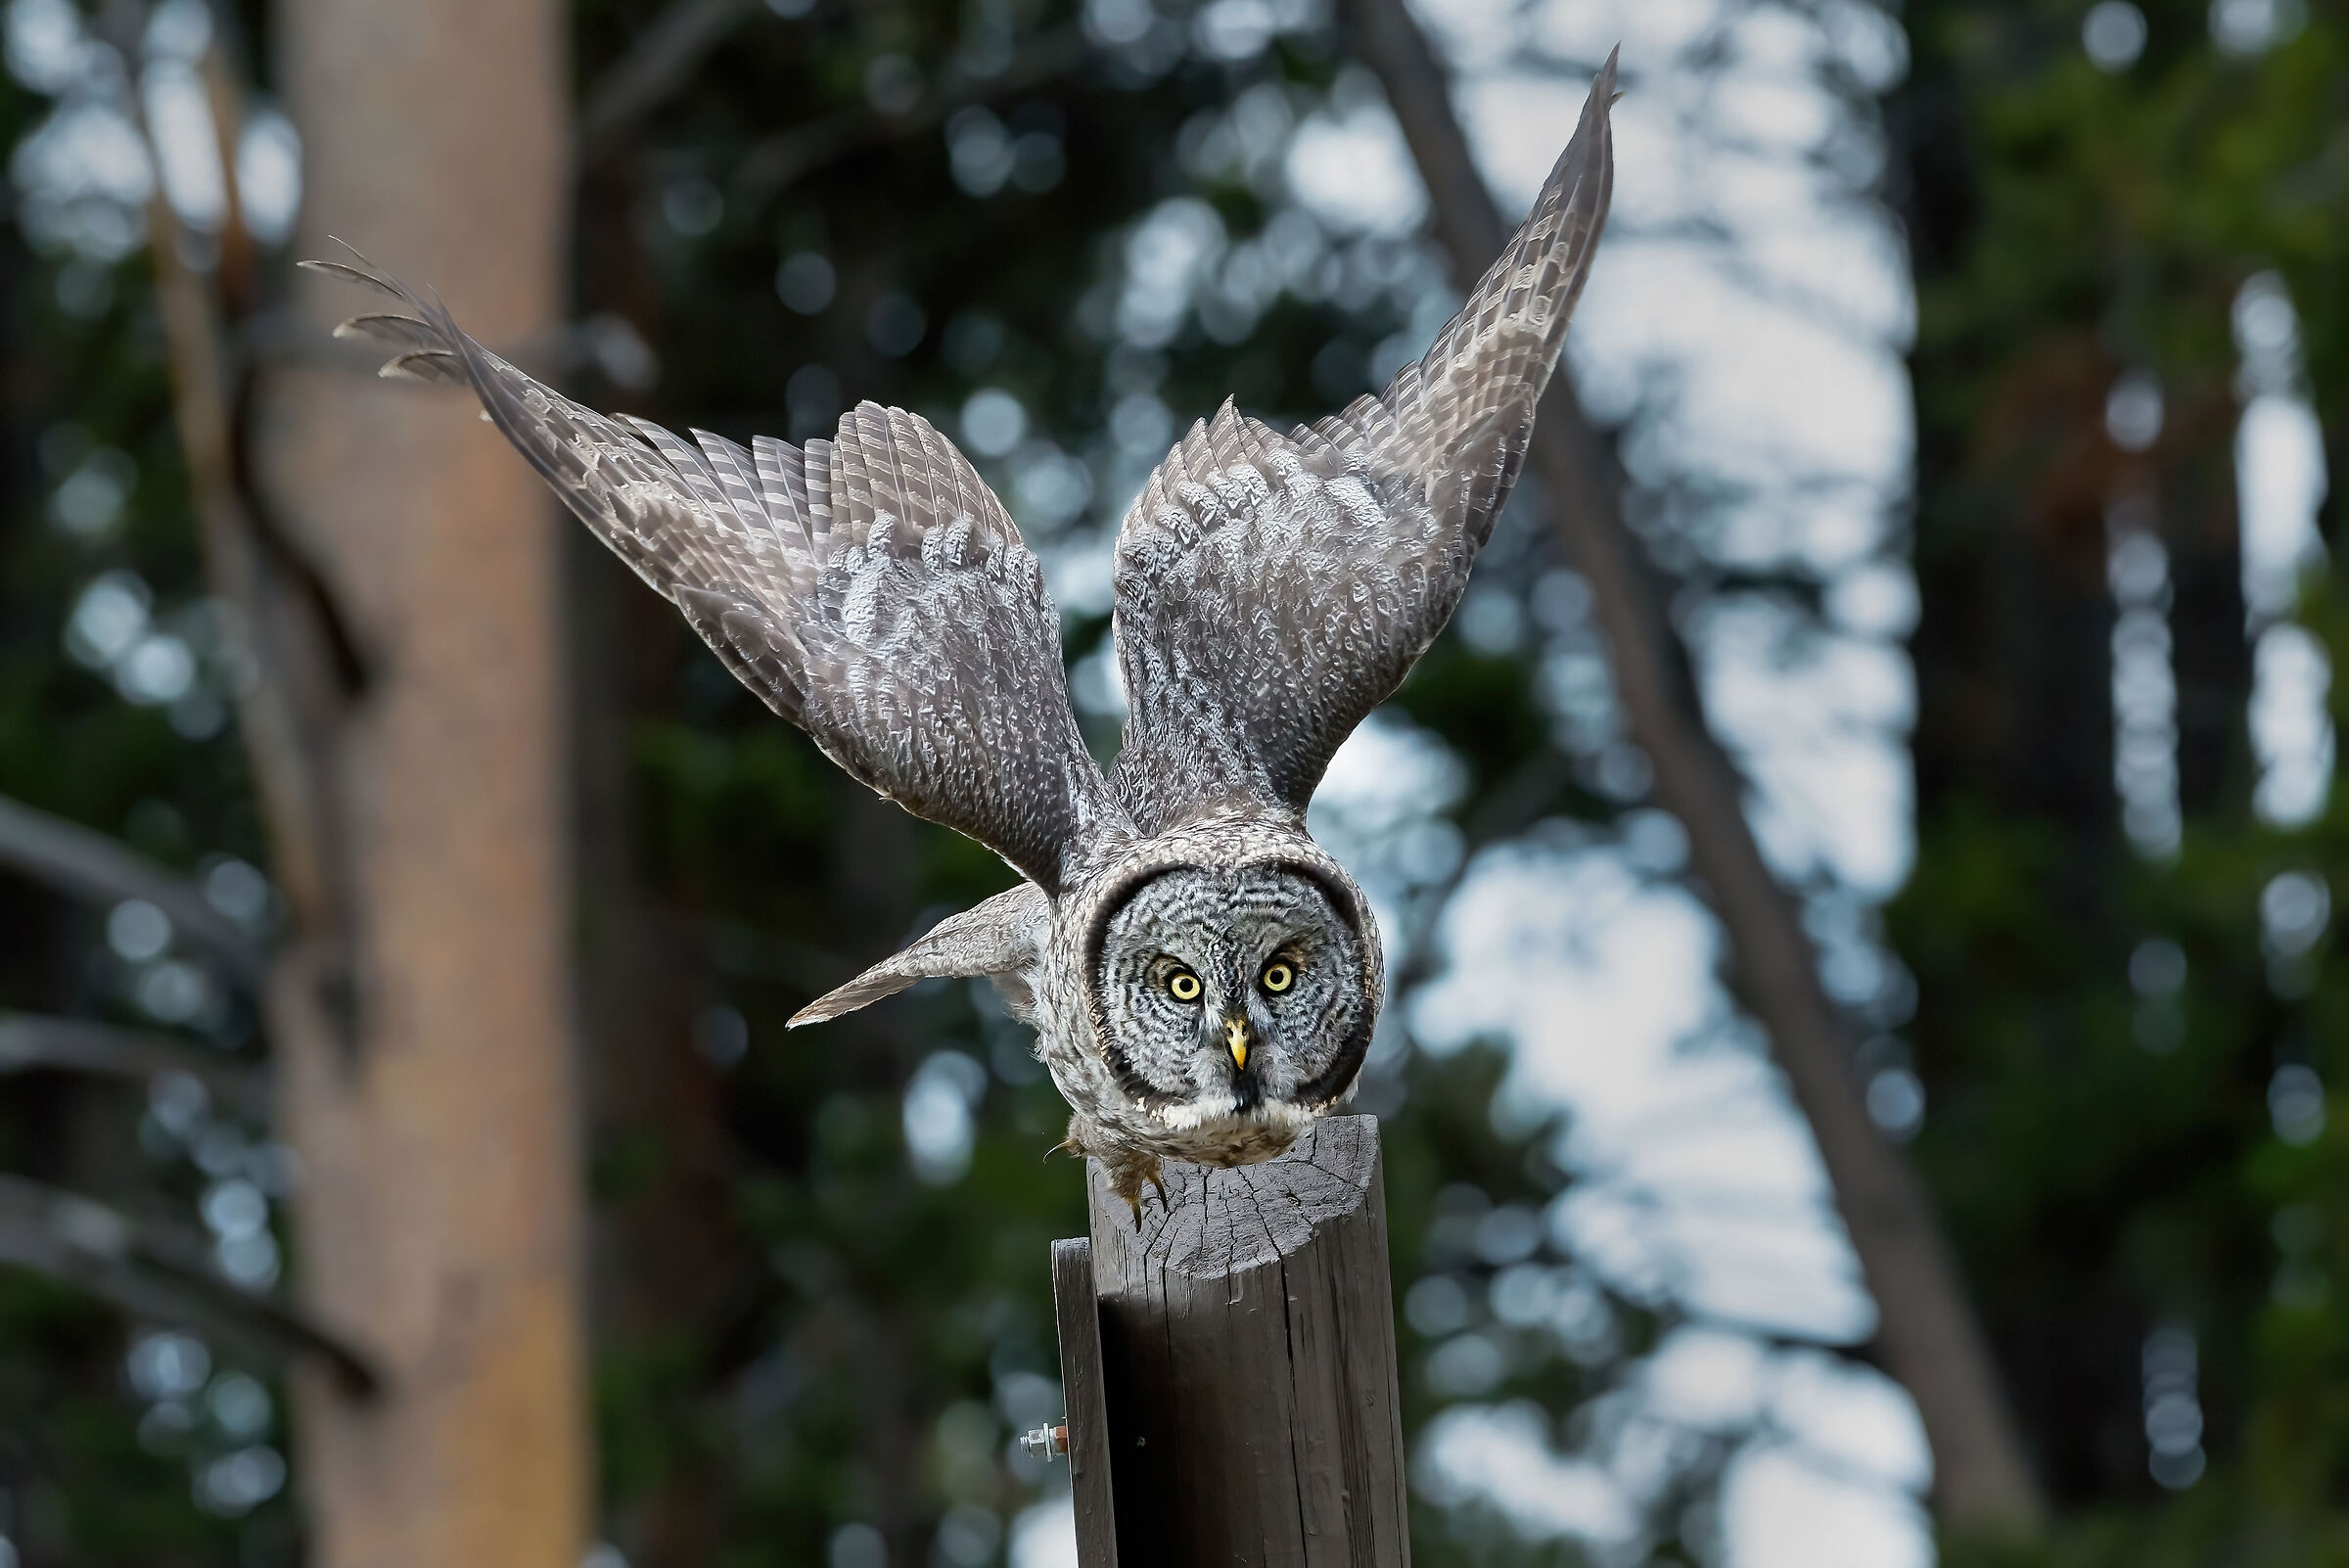 Allocco di Lapponia (Strix nebulosa), Great Grey Owl...